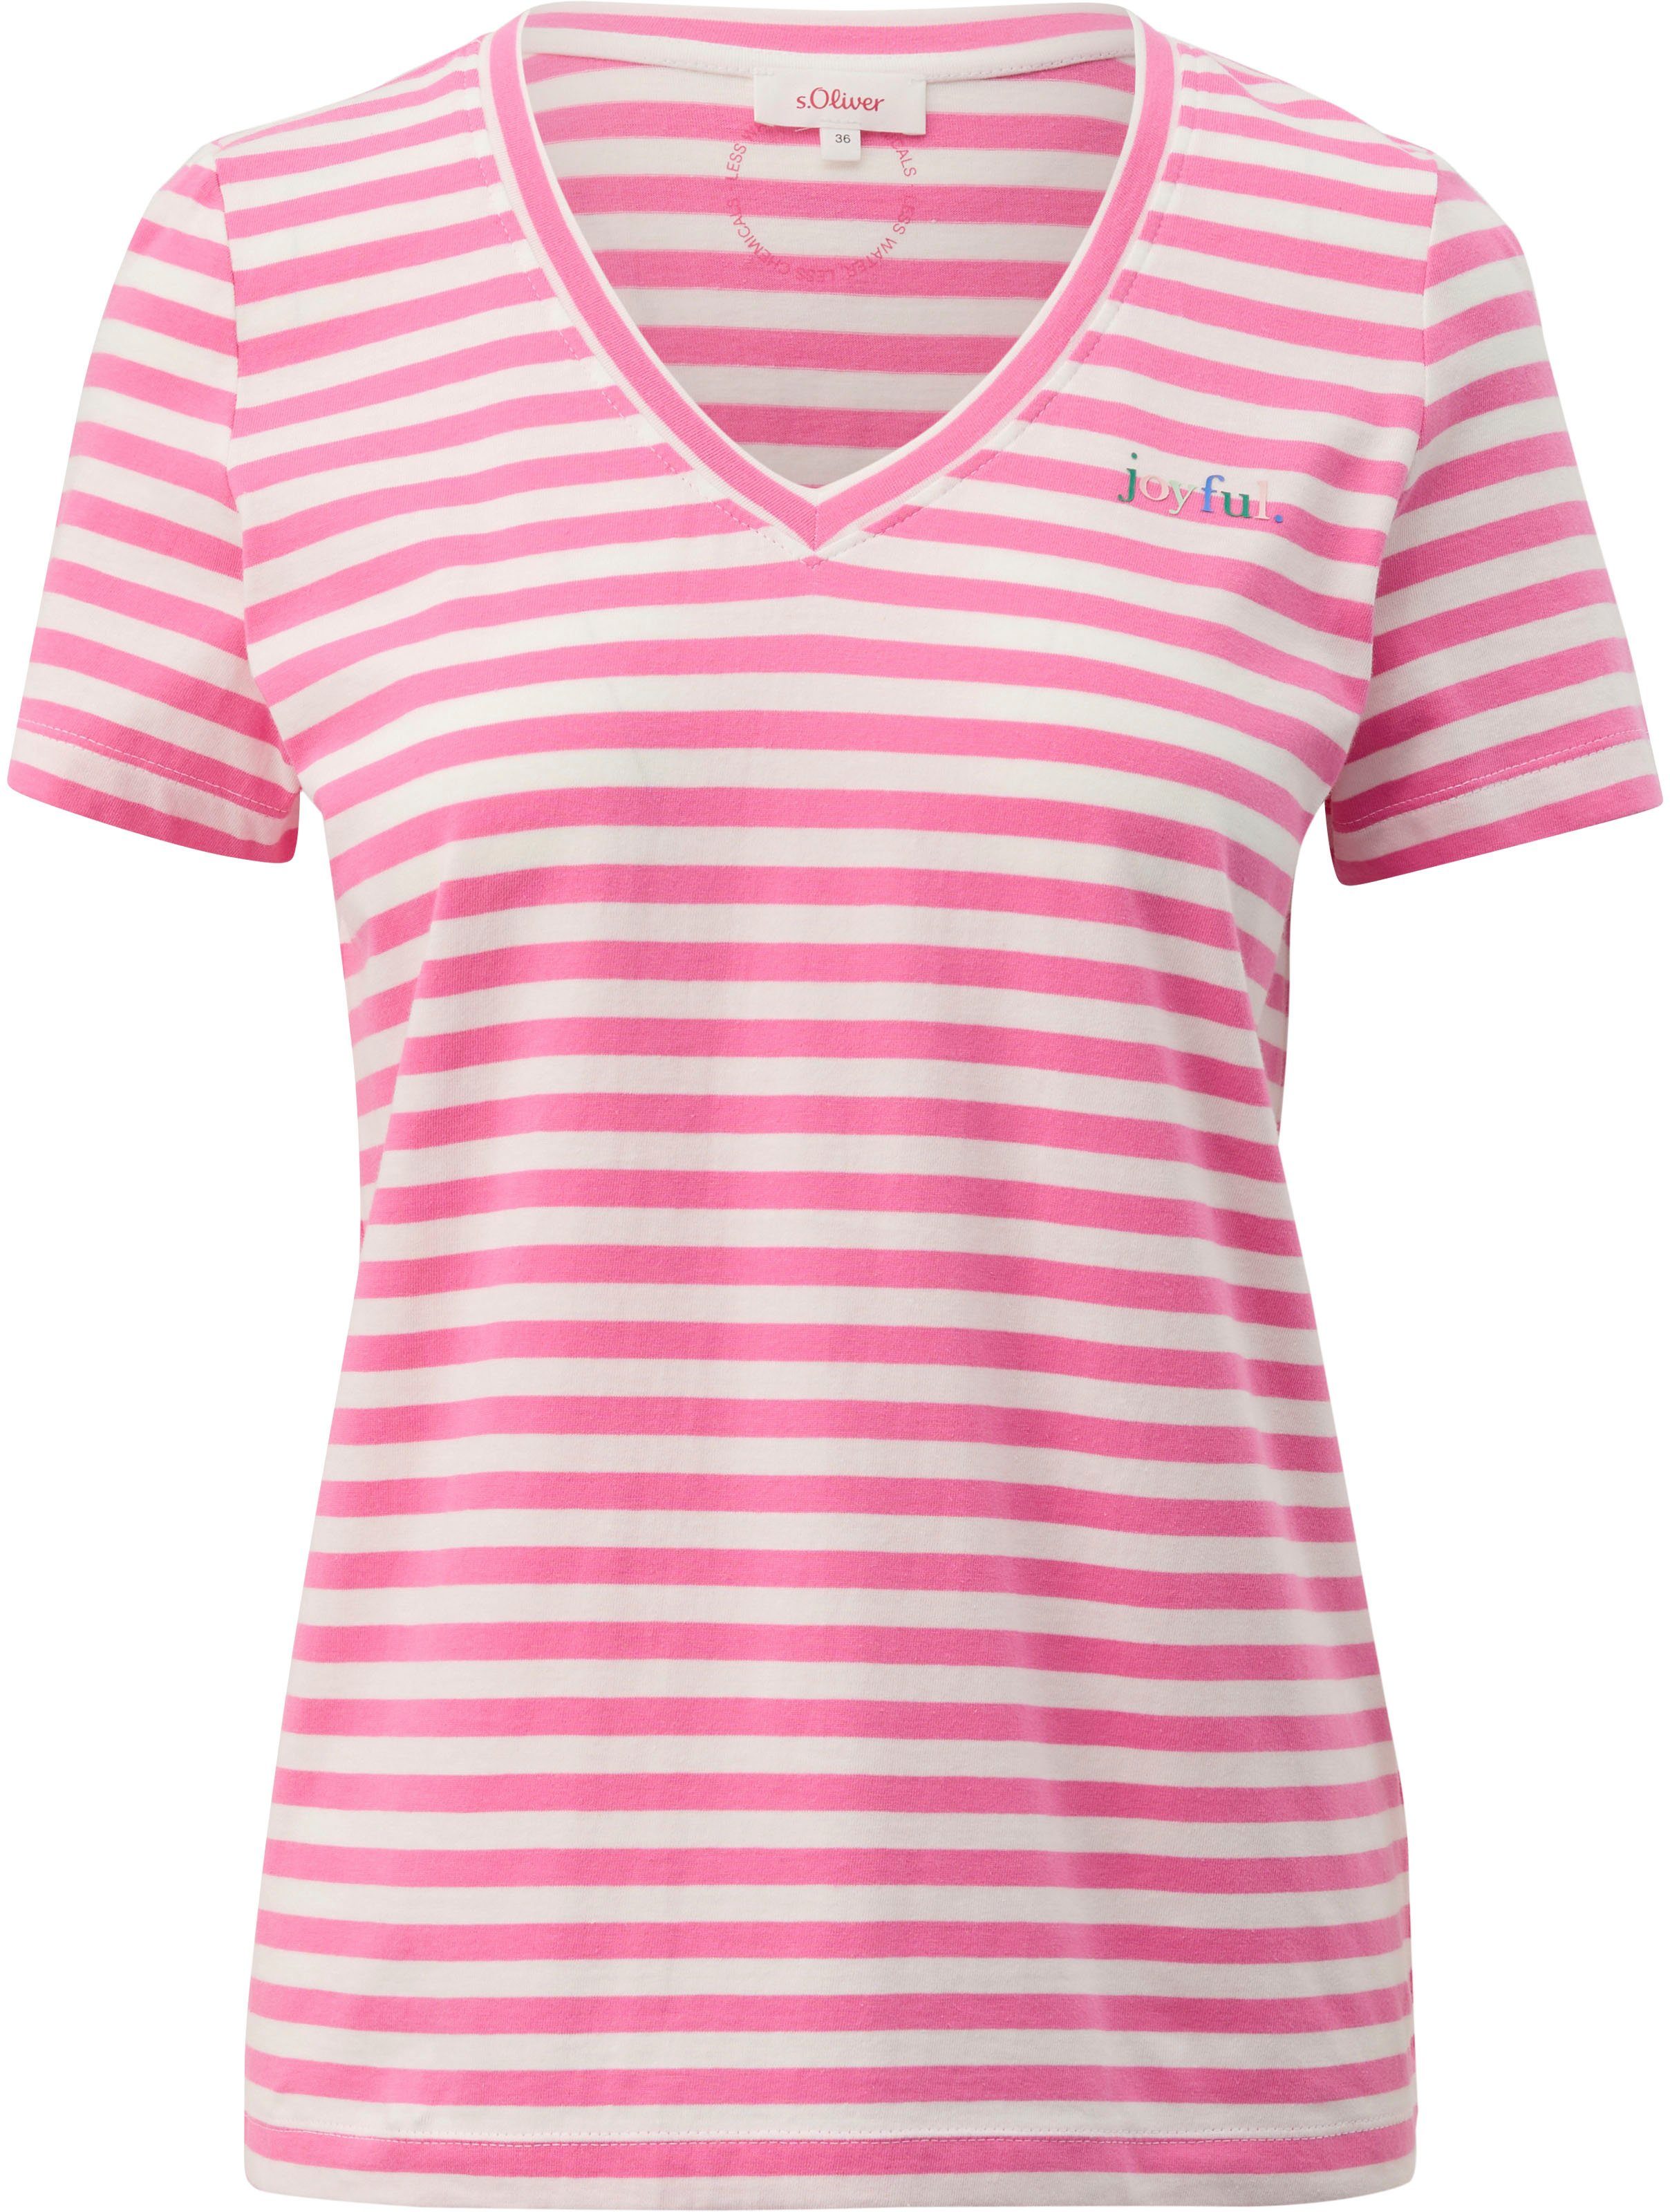 »joyful.« Frontprint lilac/pink V-Shirt s.Oliver mit